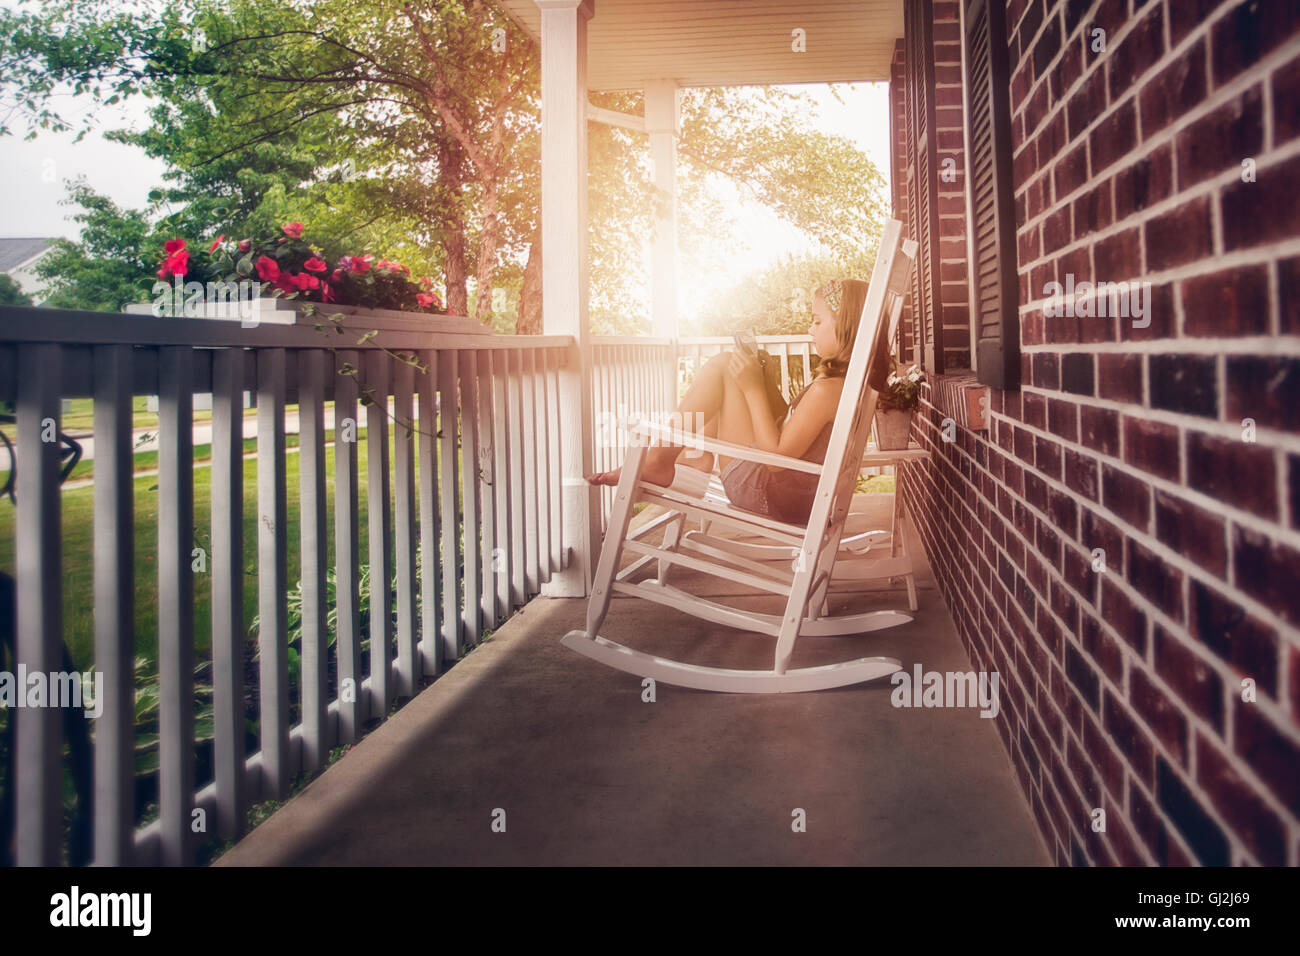 Ragazze sulla veranda in sedia a dondolo con tavoletta digitale Foto Stock